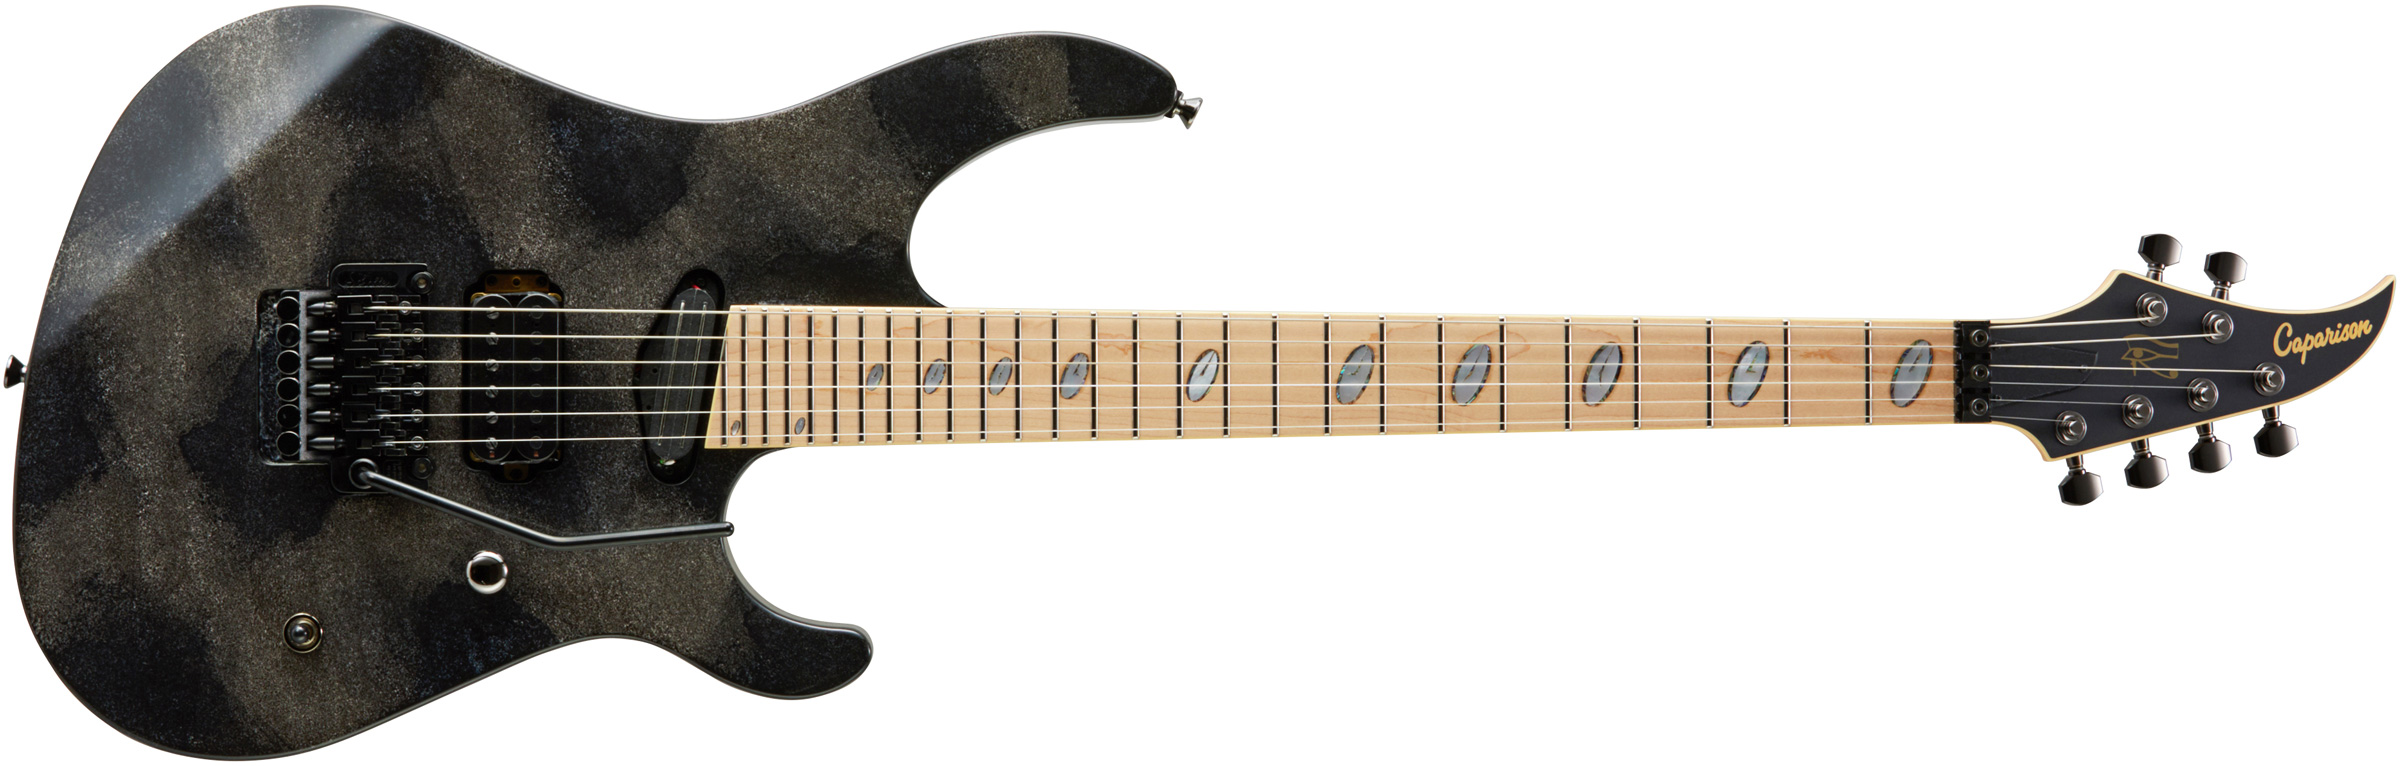 Caparison Guitars Horus-M3 MF - Maple Fretboard